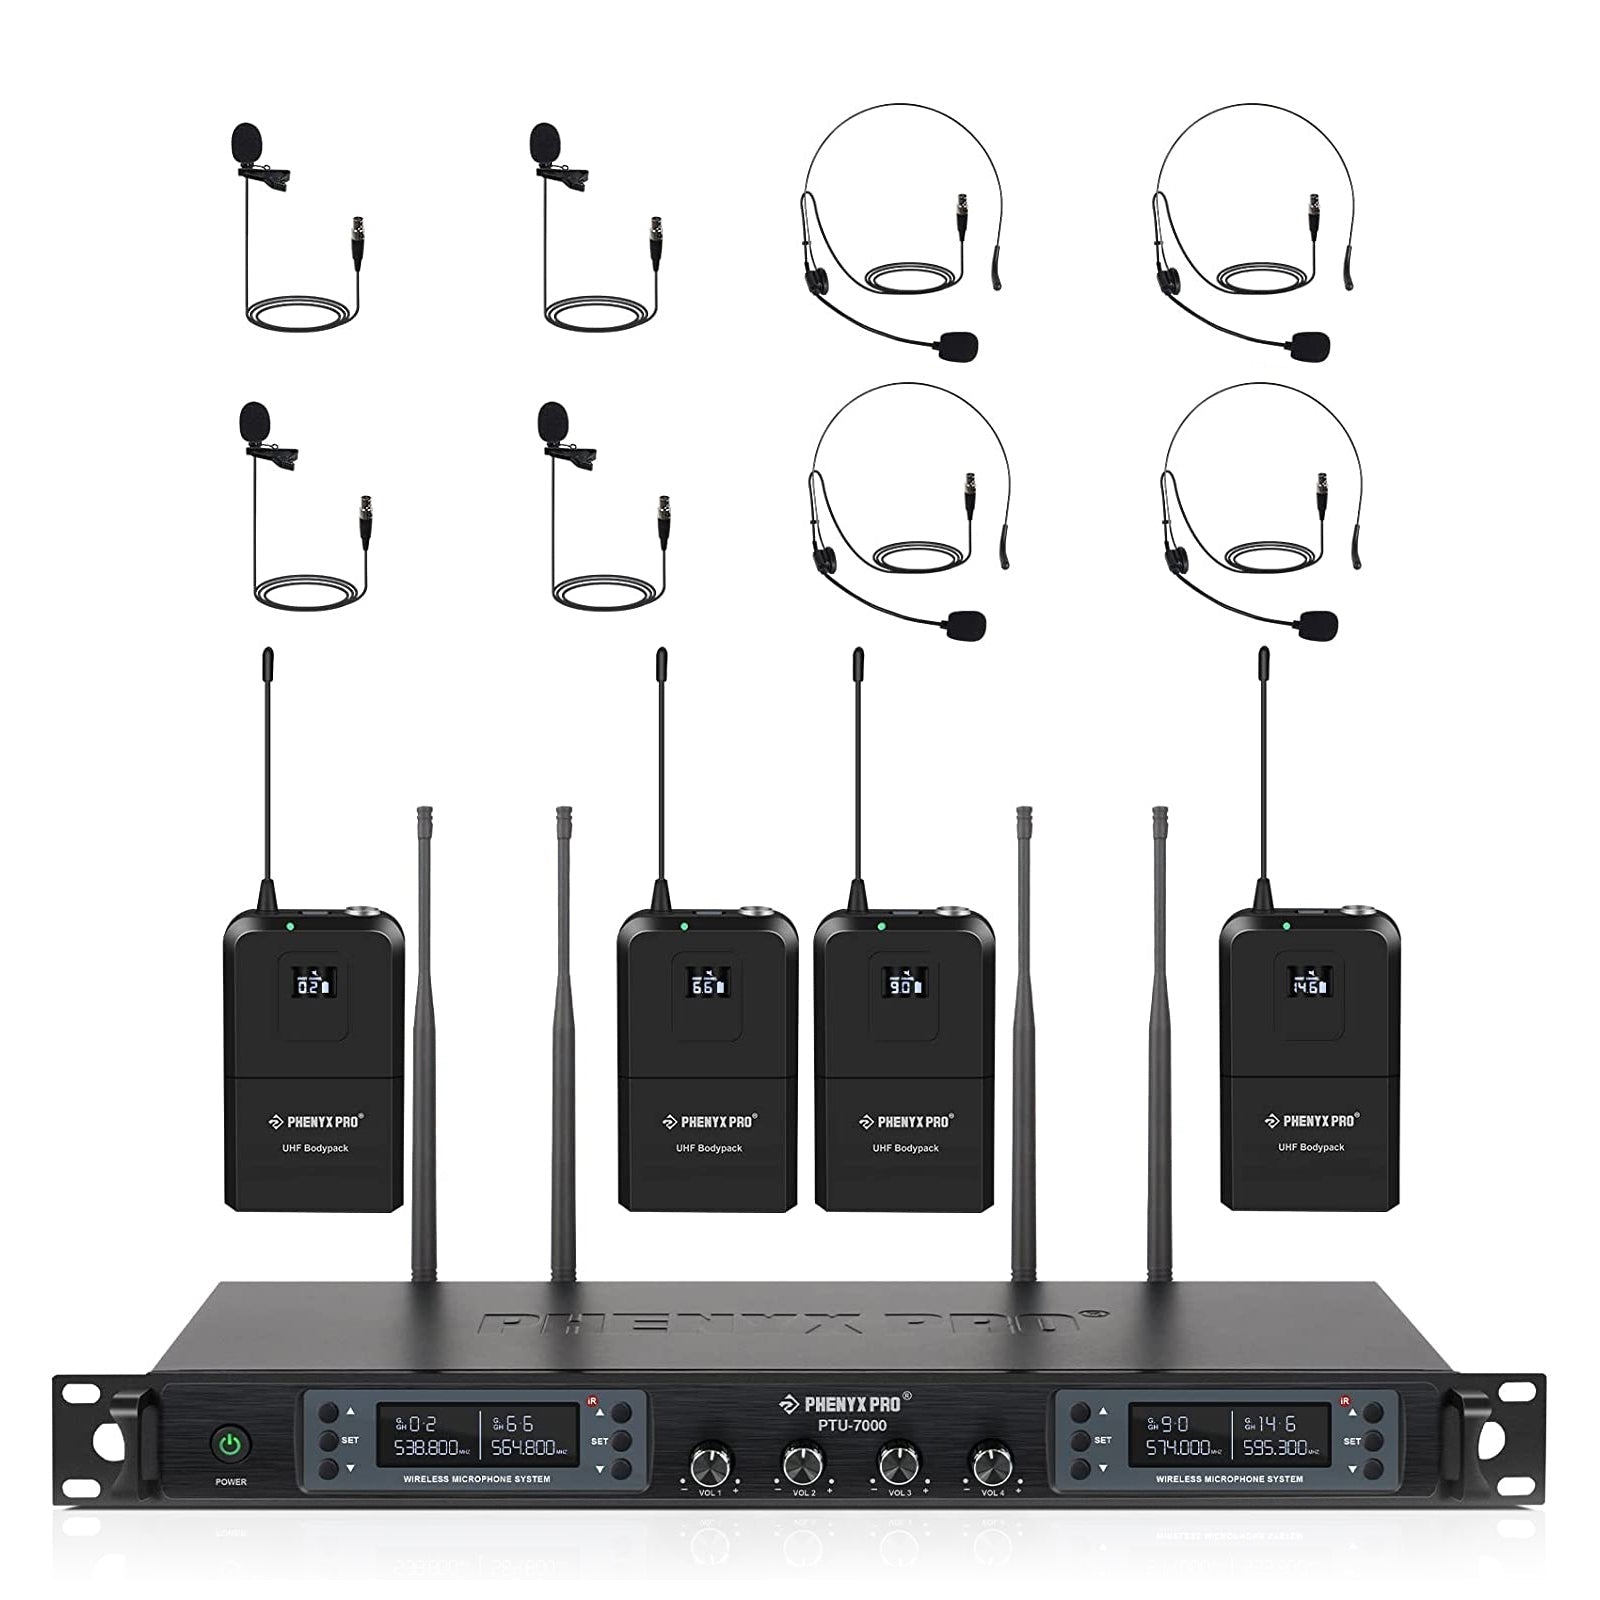 PTU-7000-4B | Quad UHF Wireless Microphone System w/ Auto-Scan